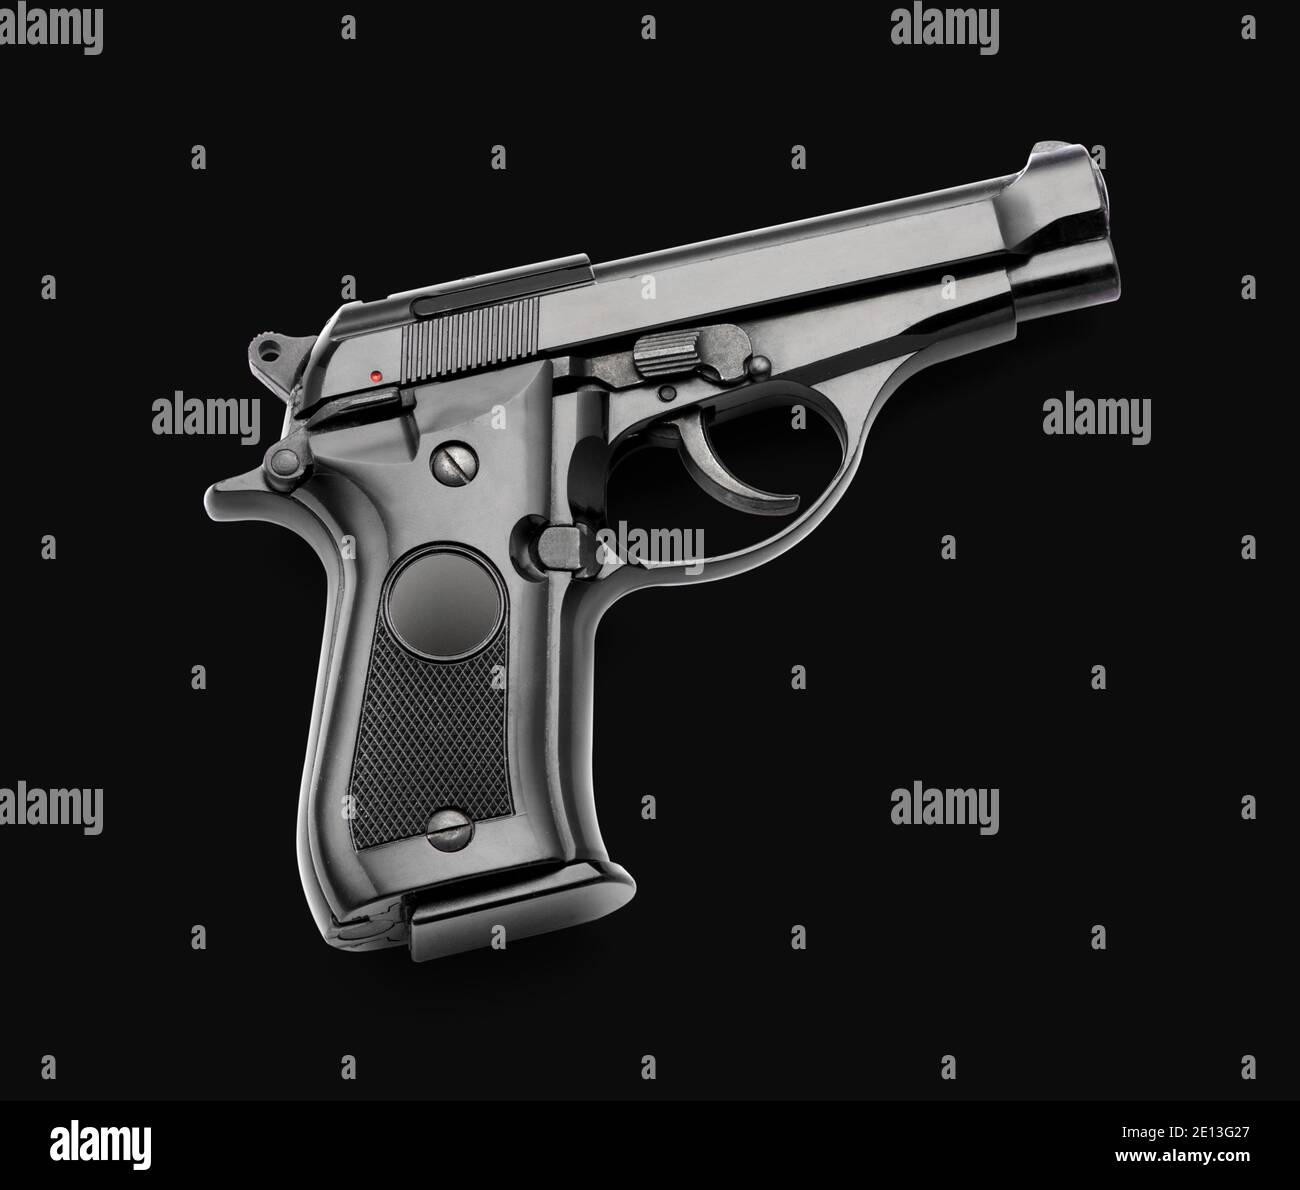 Pistola automatica nera su sfondo nero con copia spazio concettuale di marktmanship, crimine, violenza o autodifesa Foto Stock